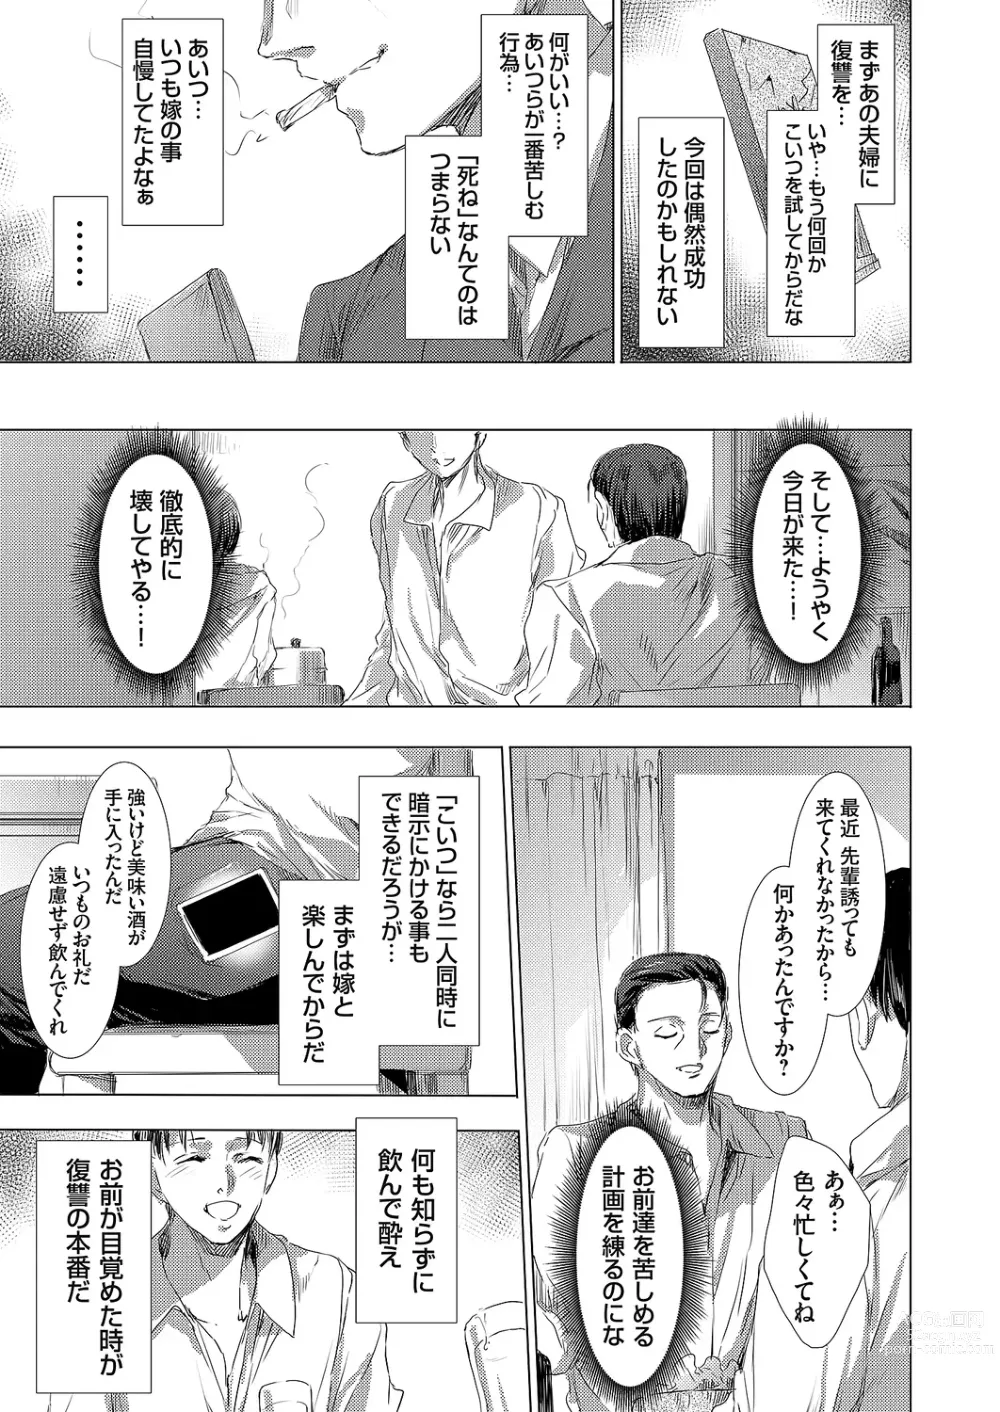 Page 11 of manga Ongyou Kikikaikaidou 01-09